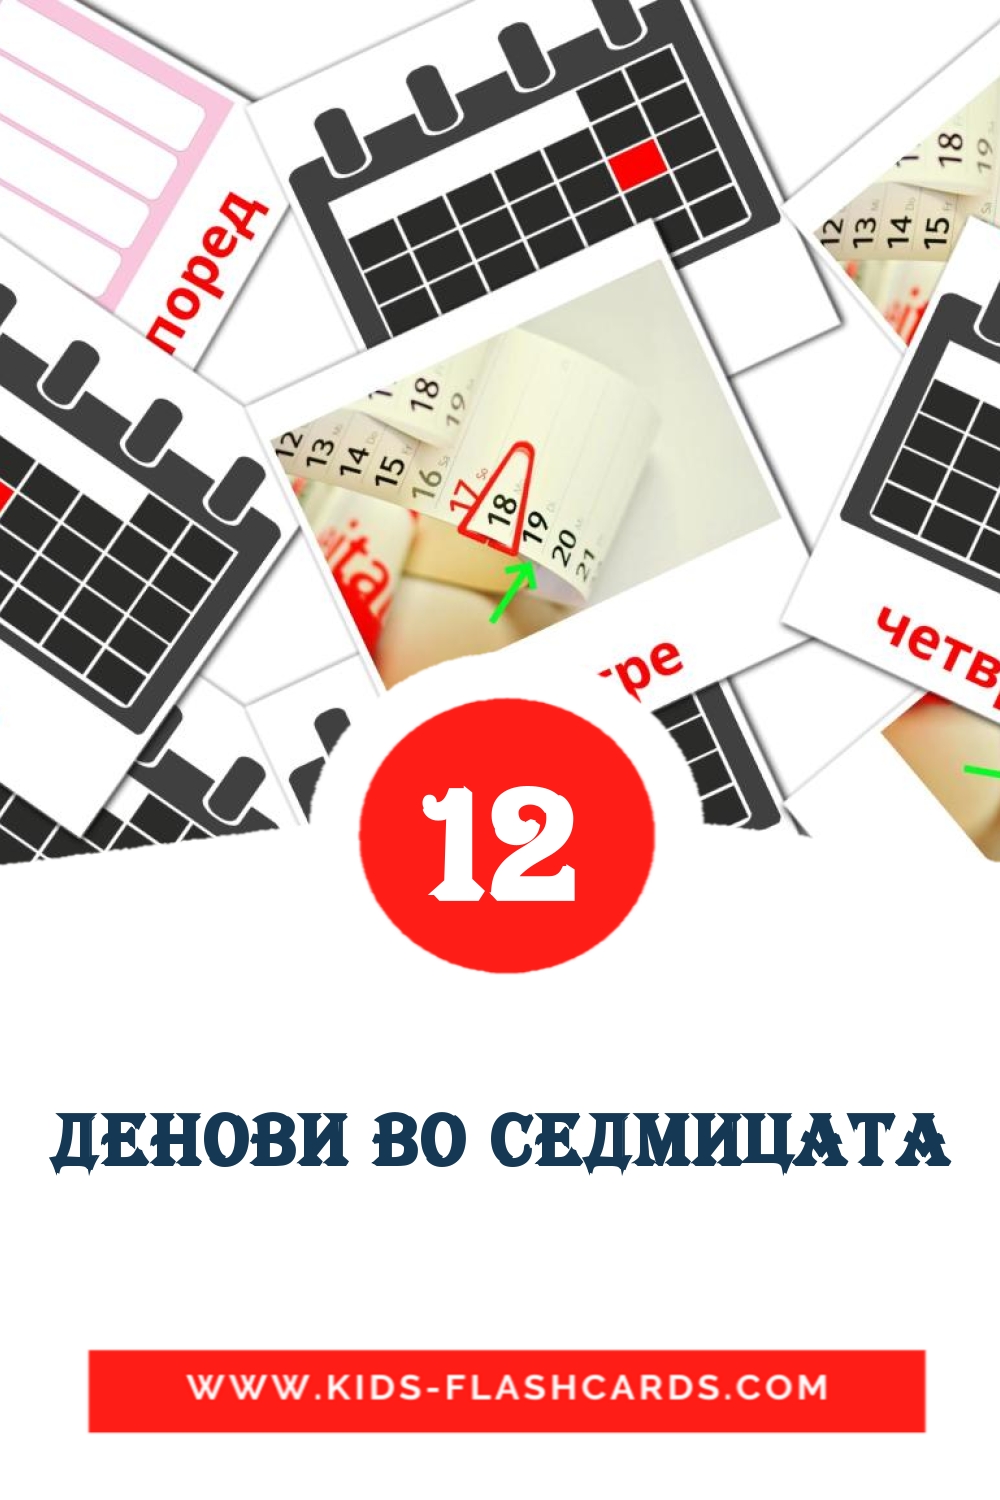 12 cartes illustrées de Денови во седмицата pour la maternelle en macédonien